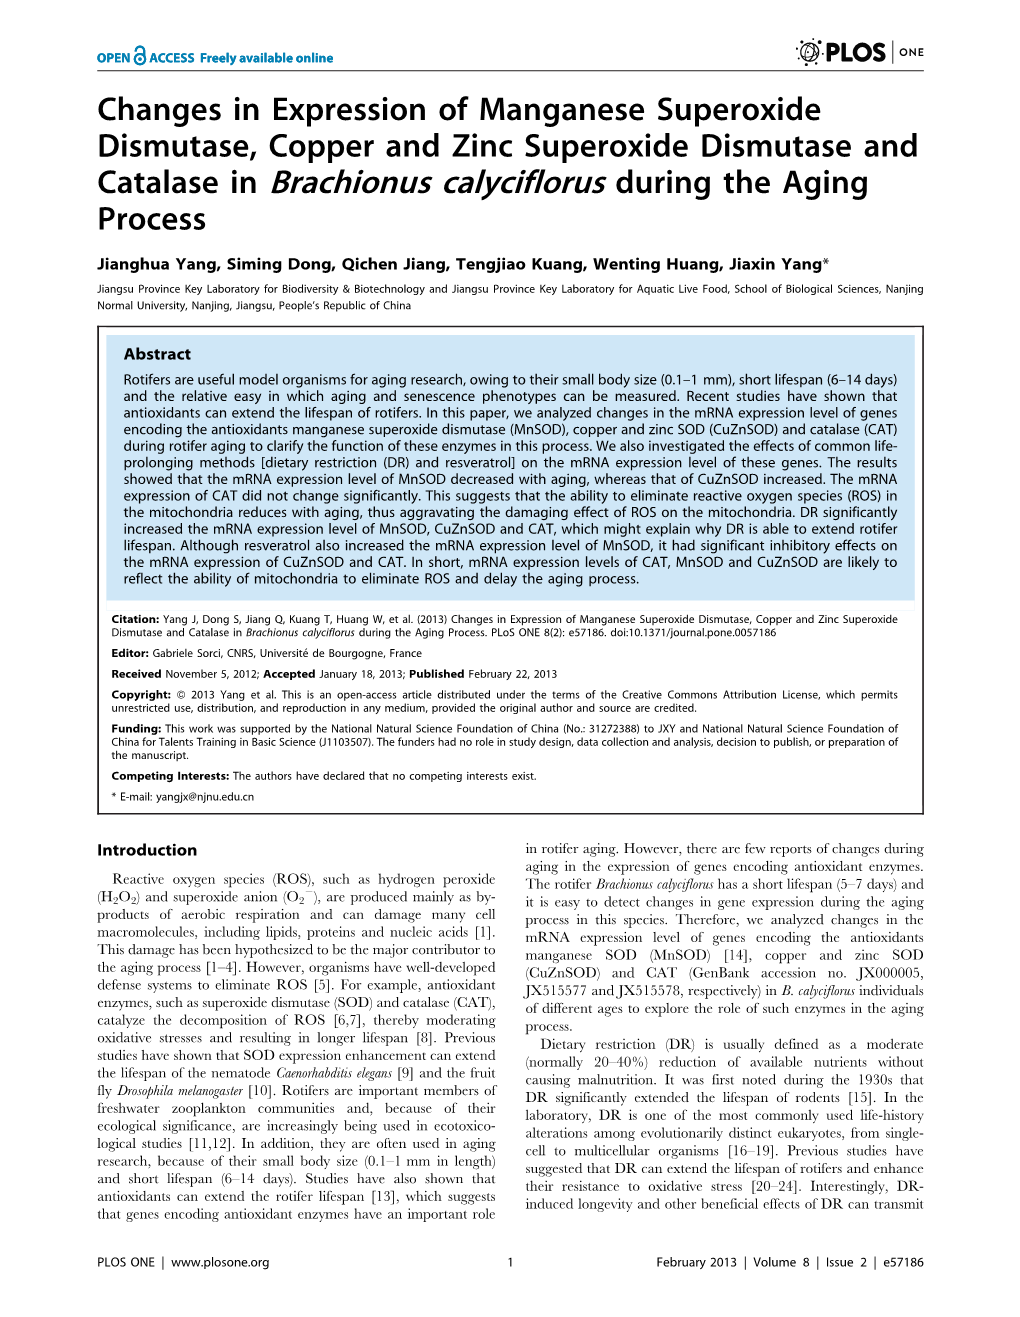 Catalase in Brachionus Calyciflorus During the Aging Process